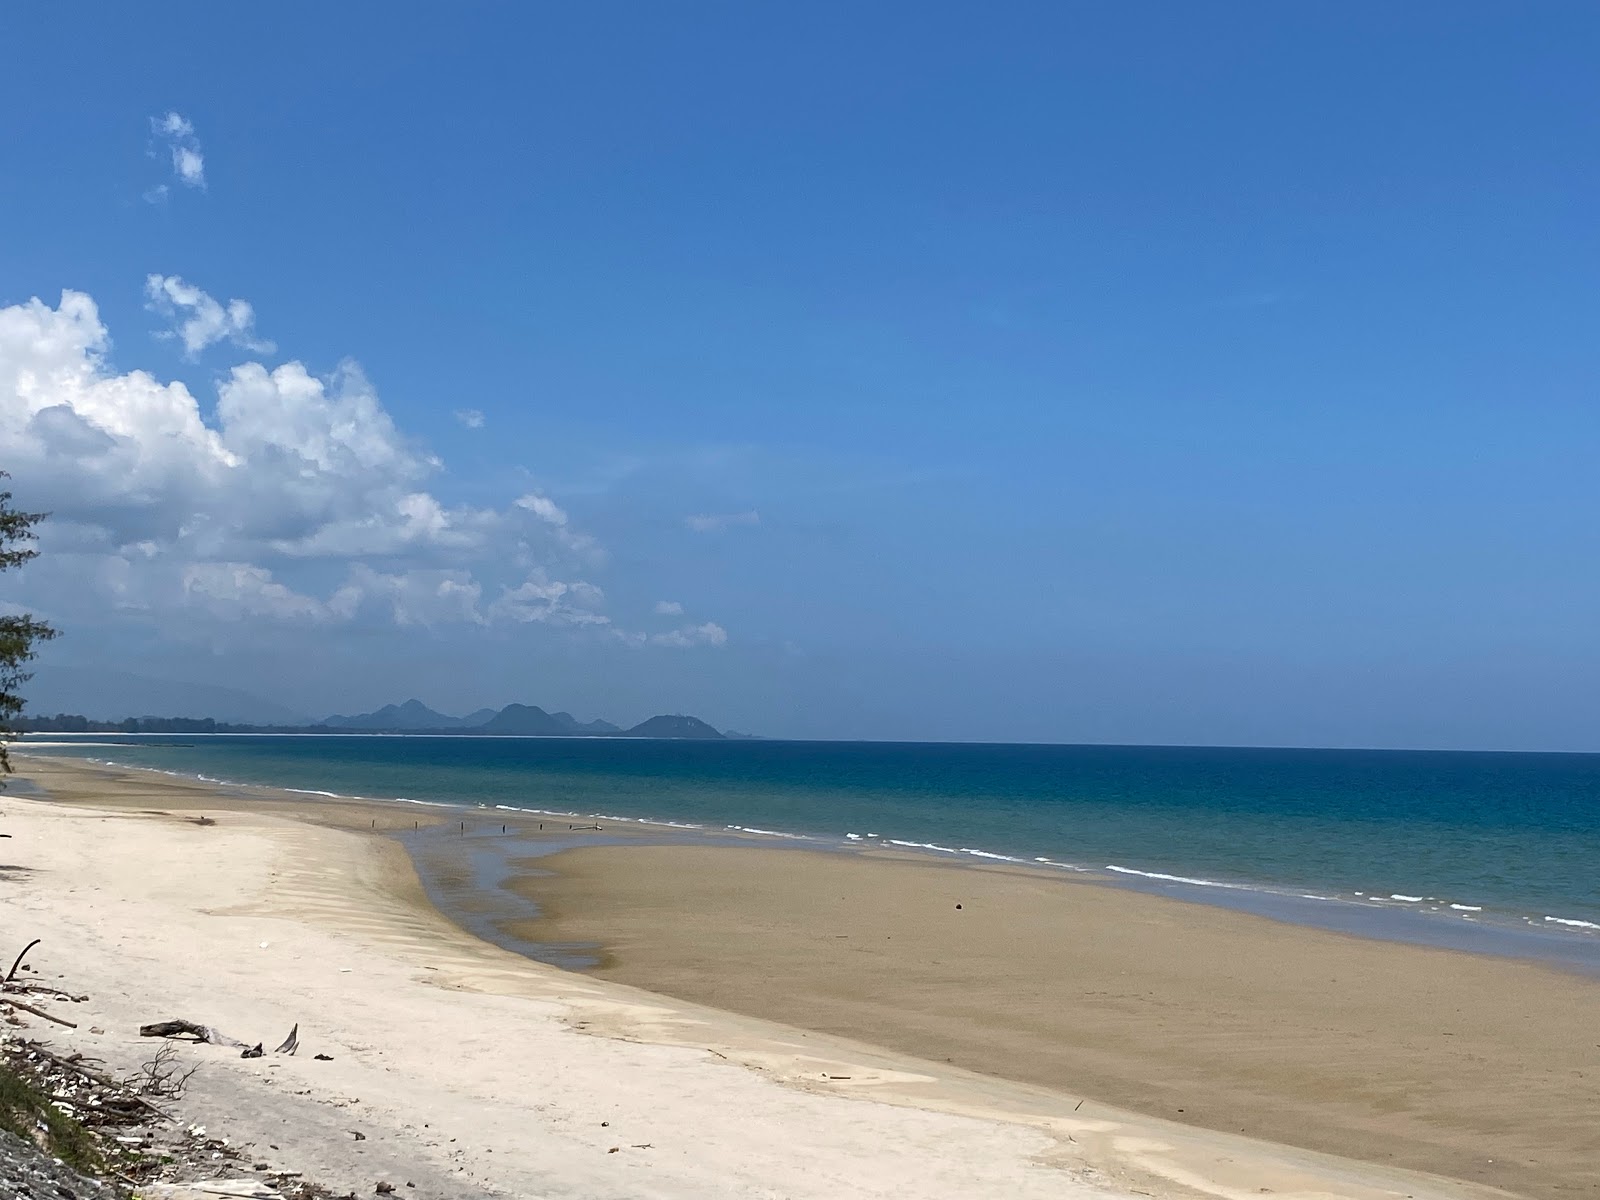 Zdjęcie Don Samran Beach - popularne miejsce wśród znawców relaksu